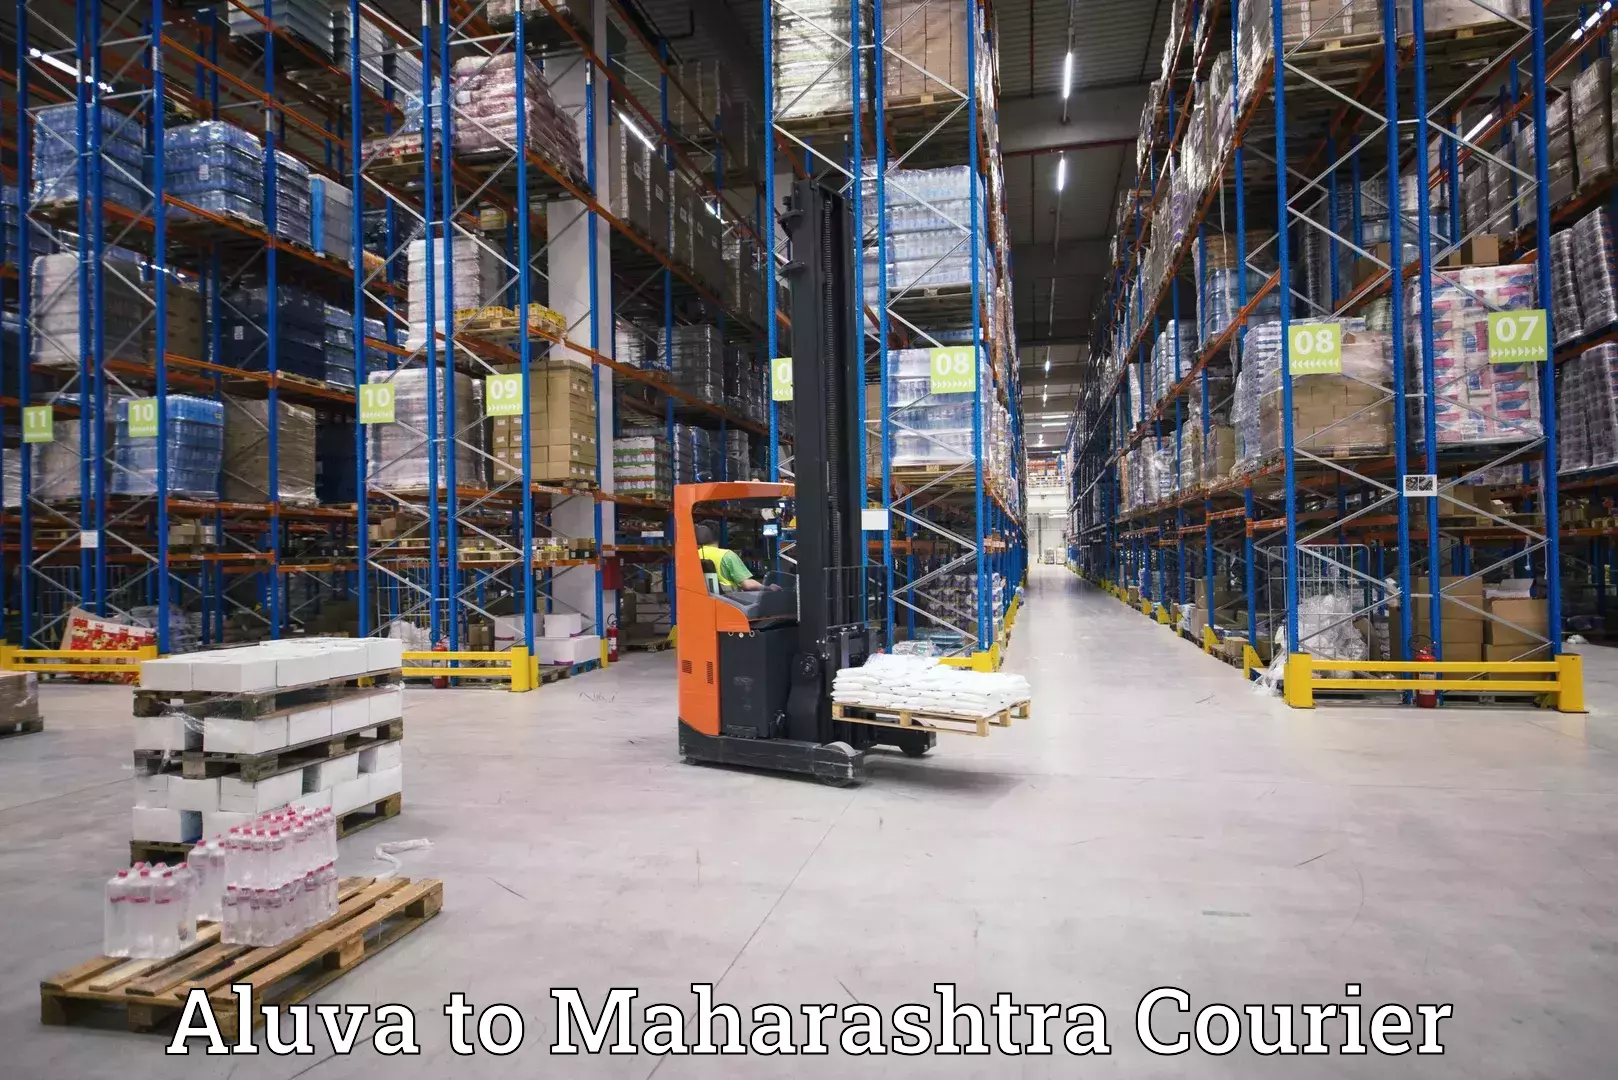 On-demand courier Aluva to Shivajinagar